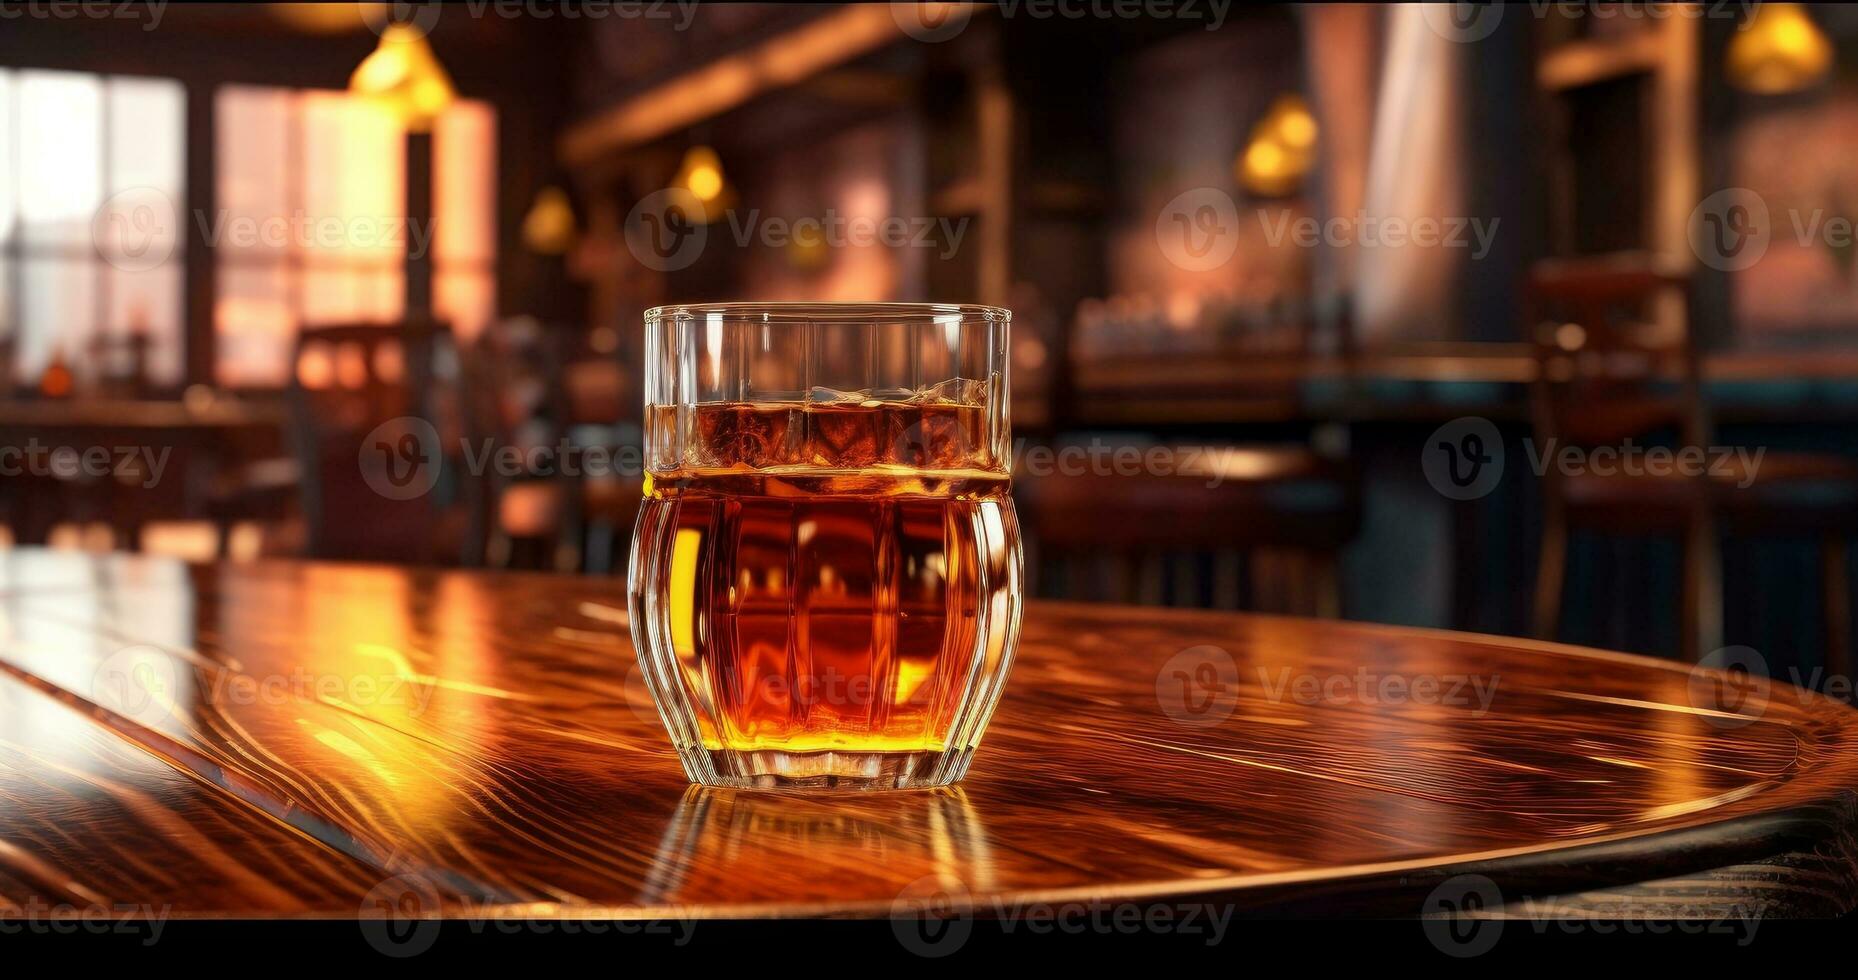 https://static.vecteezy.com/ti/foto-gratuito/p1/26274999-bicchiere-di-whisky-con-ghiaccio-su-un-di-legno-tavolo-contro-sfondo-bar-pub-sfondo-un-bicchiere-di-costoso-whisky-copia-spazio-foto.jpeg